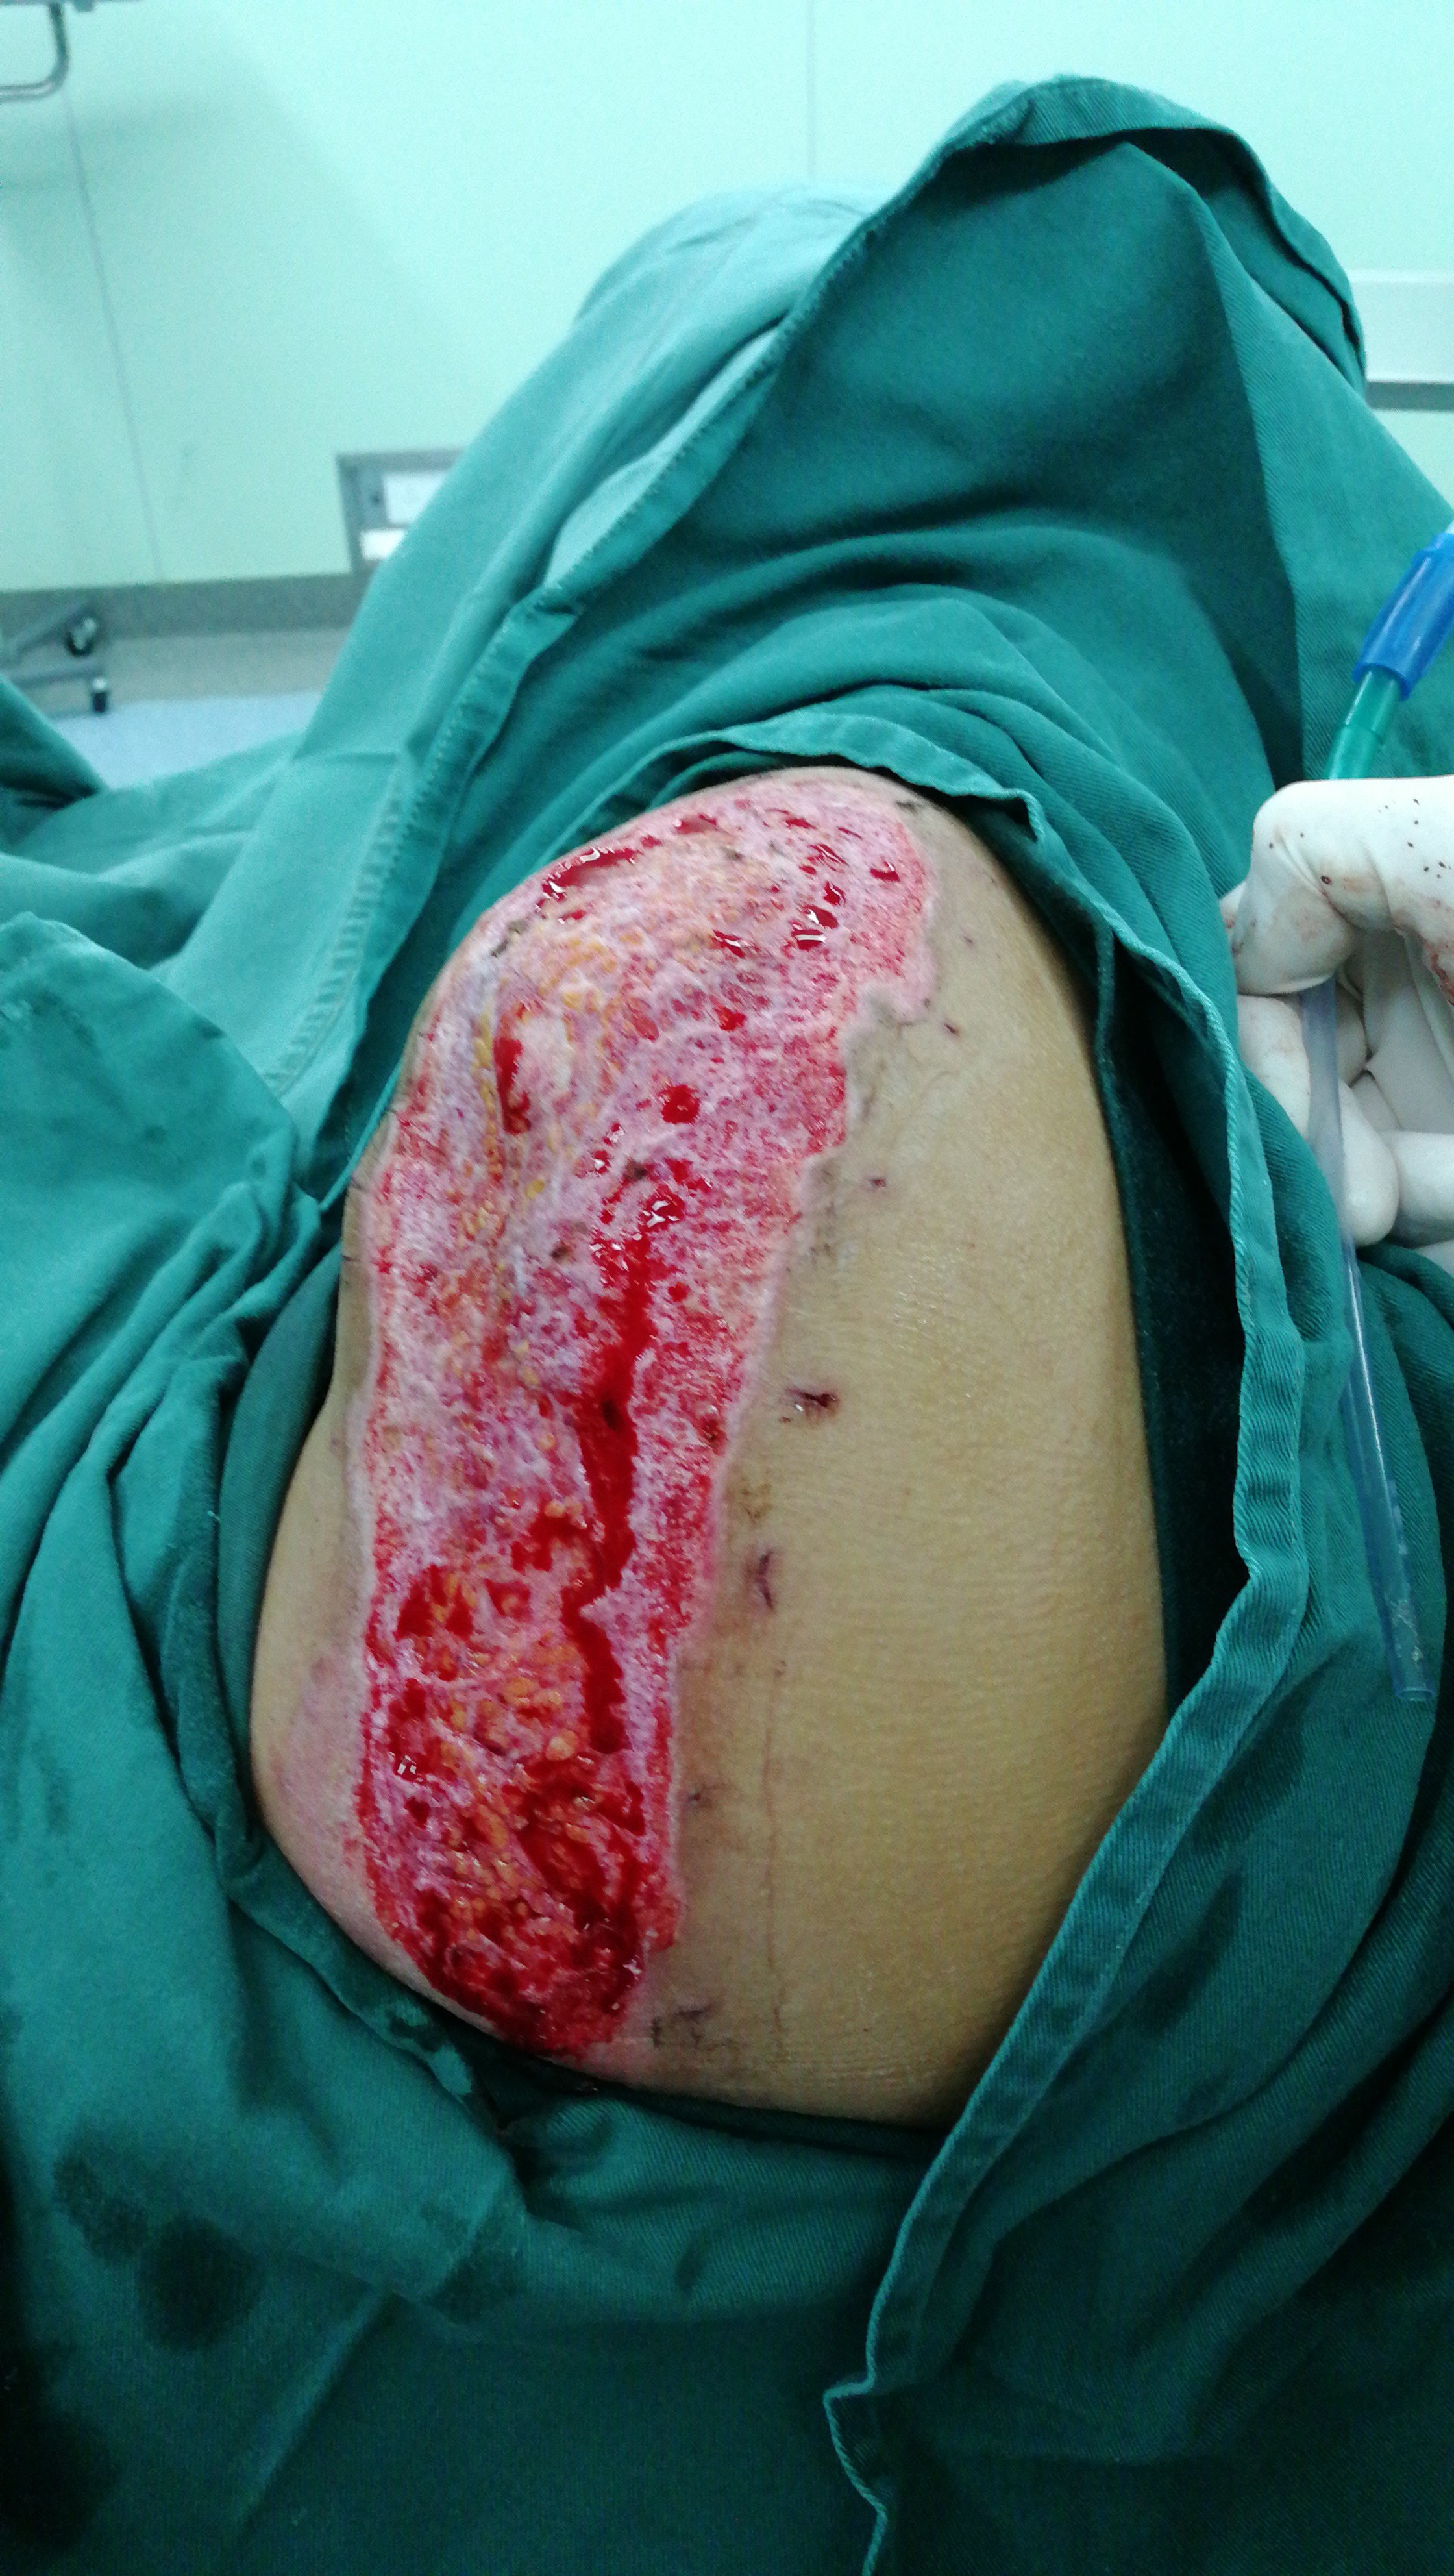 受伤后第三天受伤当日下面这个患者右肩部被机器皮带绞伤,大片组织